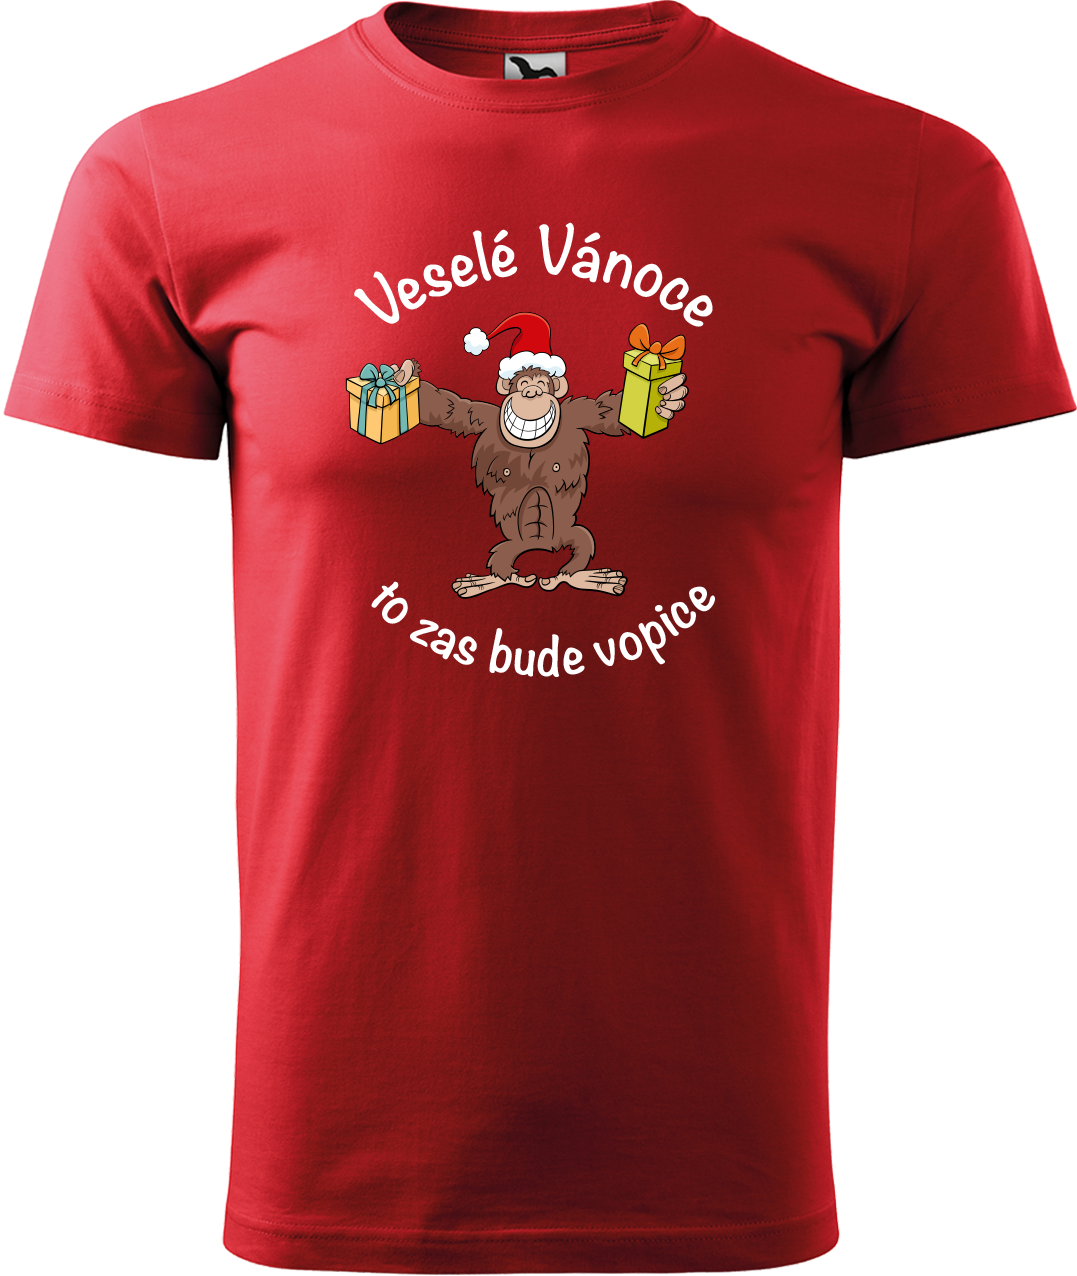 Pánské vánoční tričko - Veselé Vánoce to zas bude vopice (hnědý opičák) Velikost: M, Barva: Červená (07)